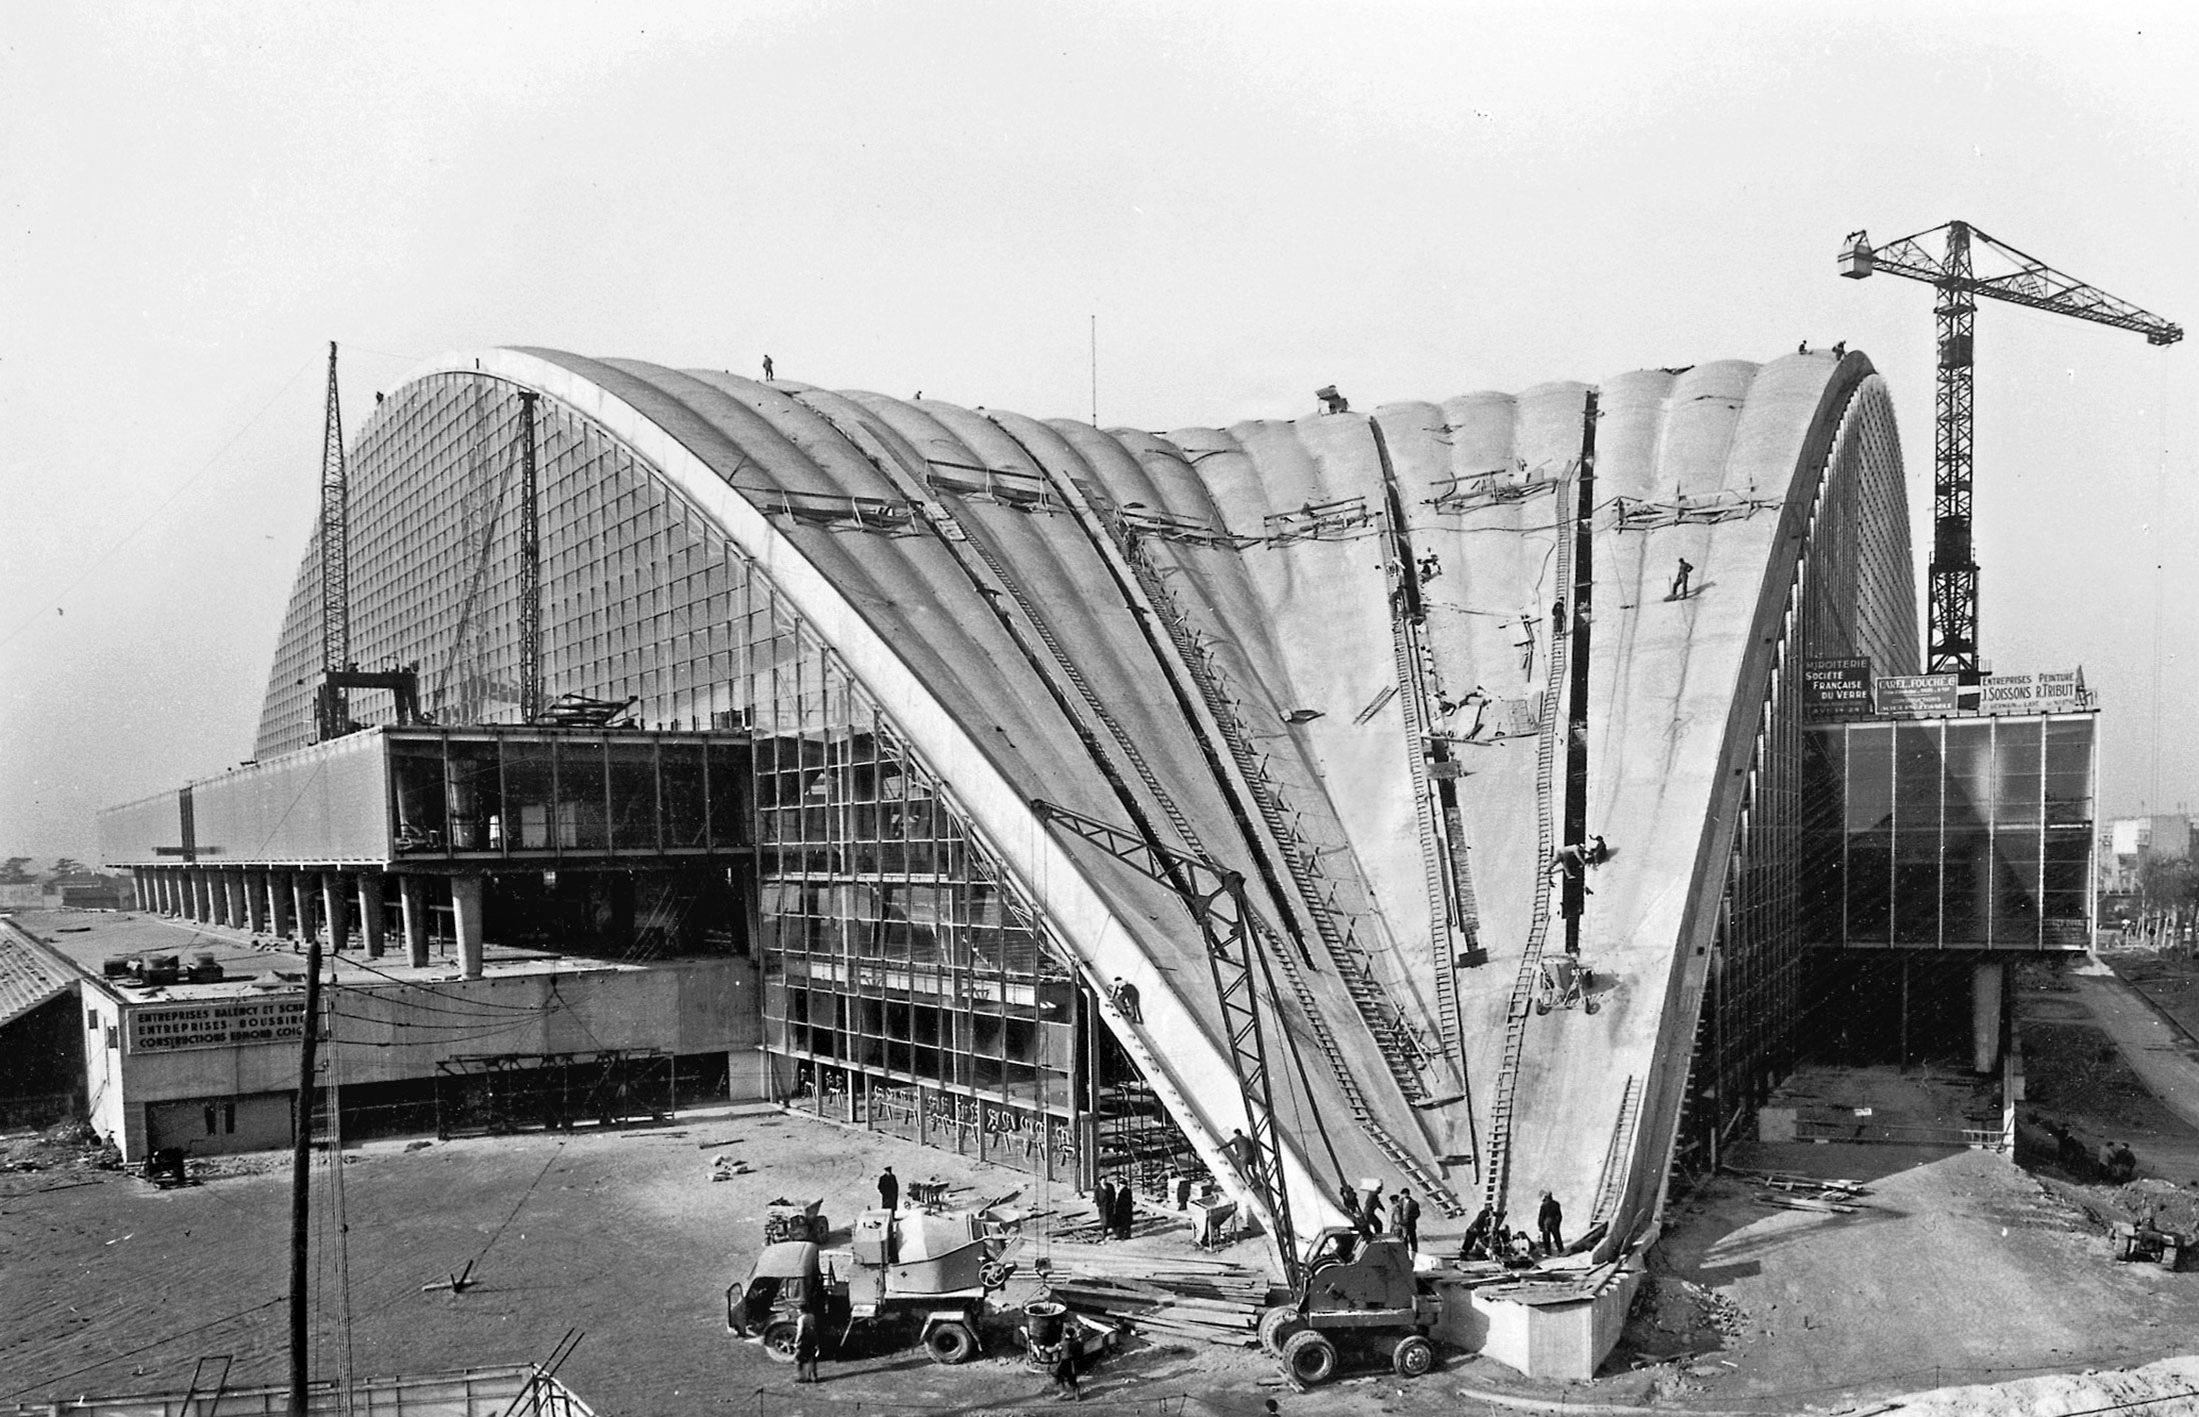 C.N.I.T., Centre national des industries et des techniques, Paris-La Défense, 1956-1958 (R. Camelot, J. de Mailly et B. H. Zehrfuss, arch.). Façade vitrée par Jean Prouvé.